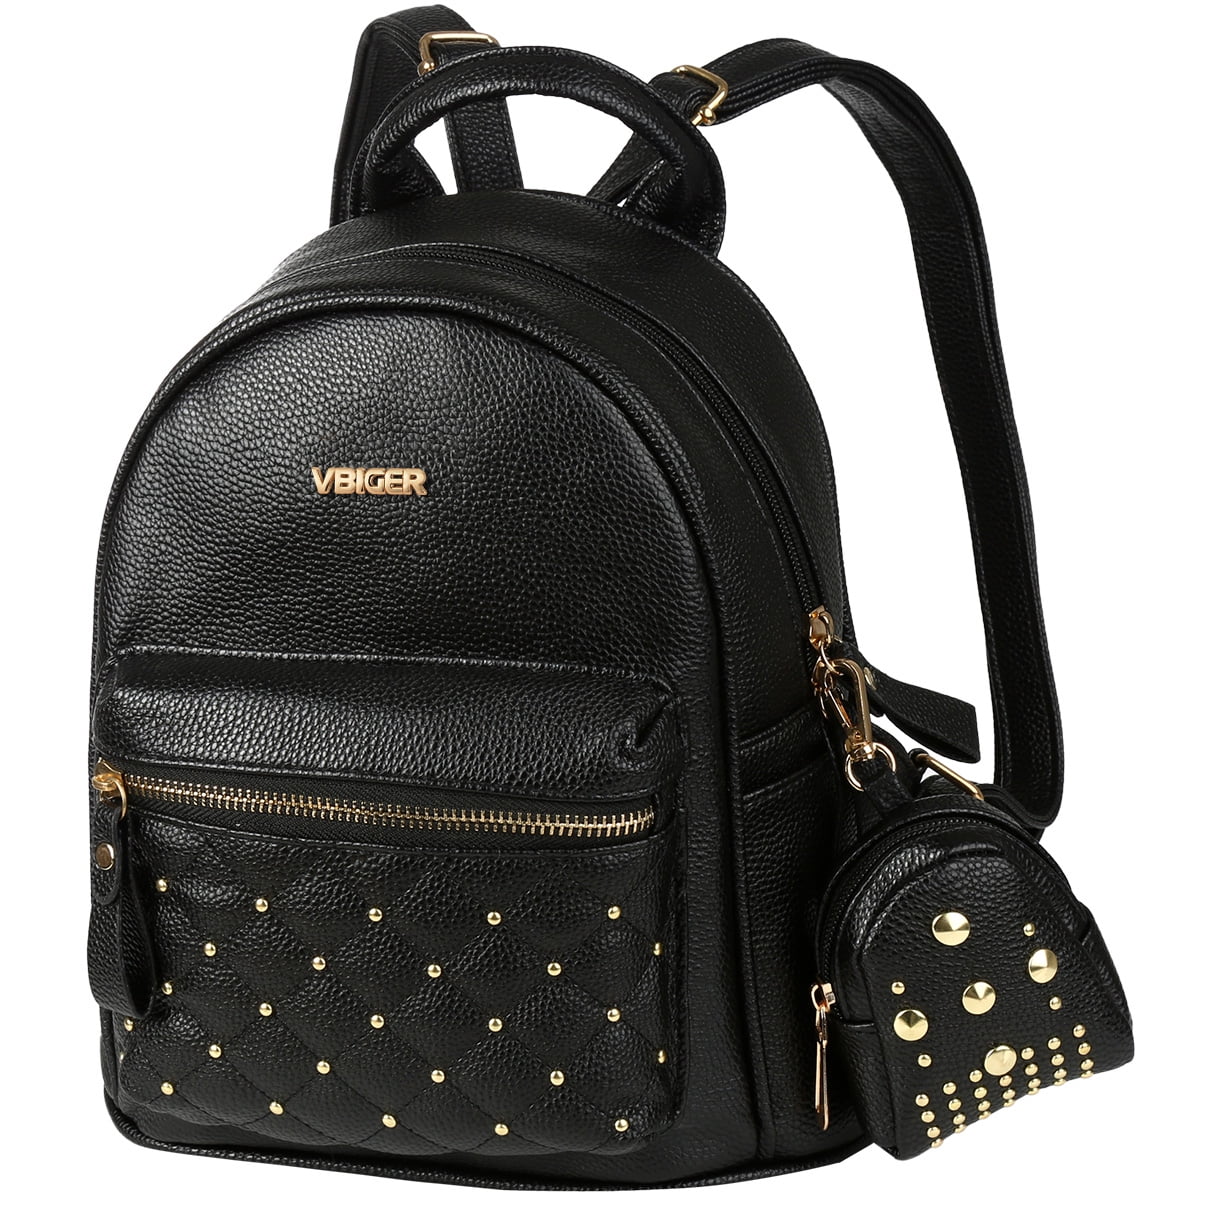 Fashion Women Backpack Travel PU Leather Handbag Rucksack Shoulder School Bag 